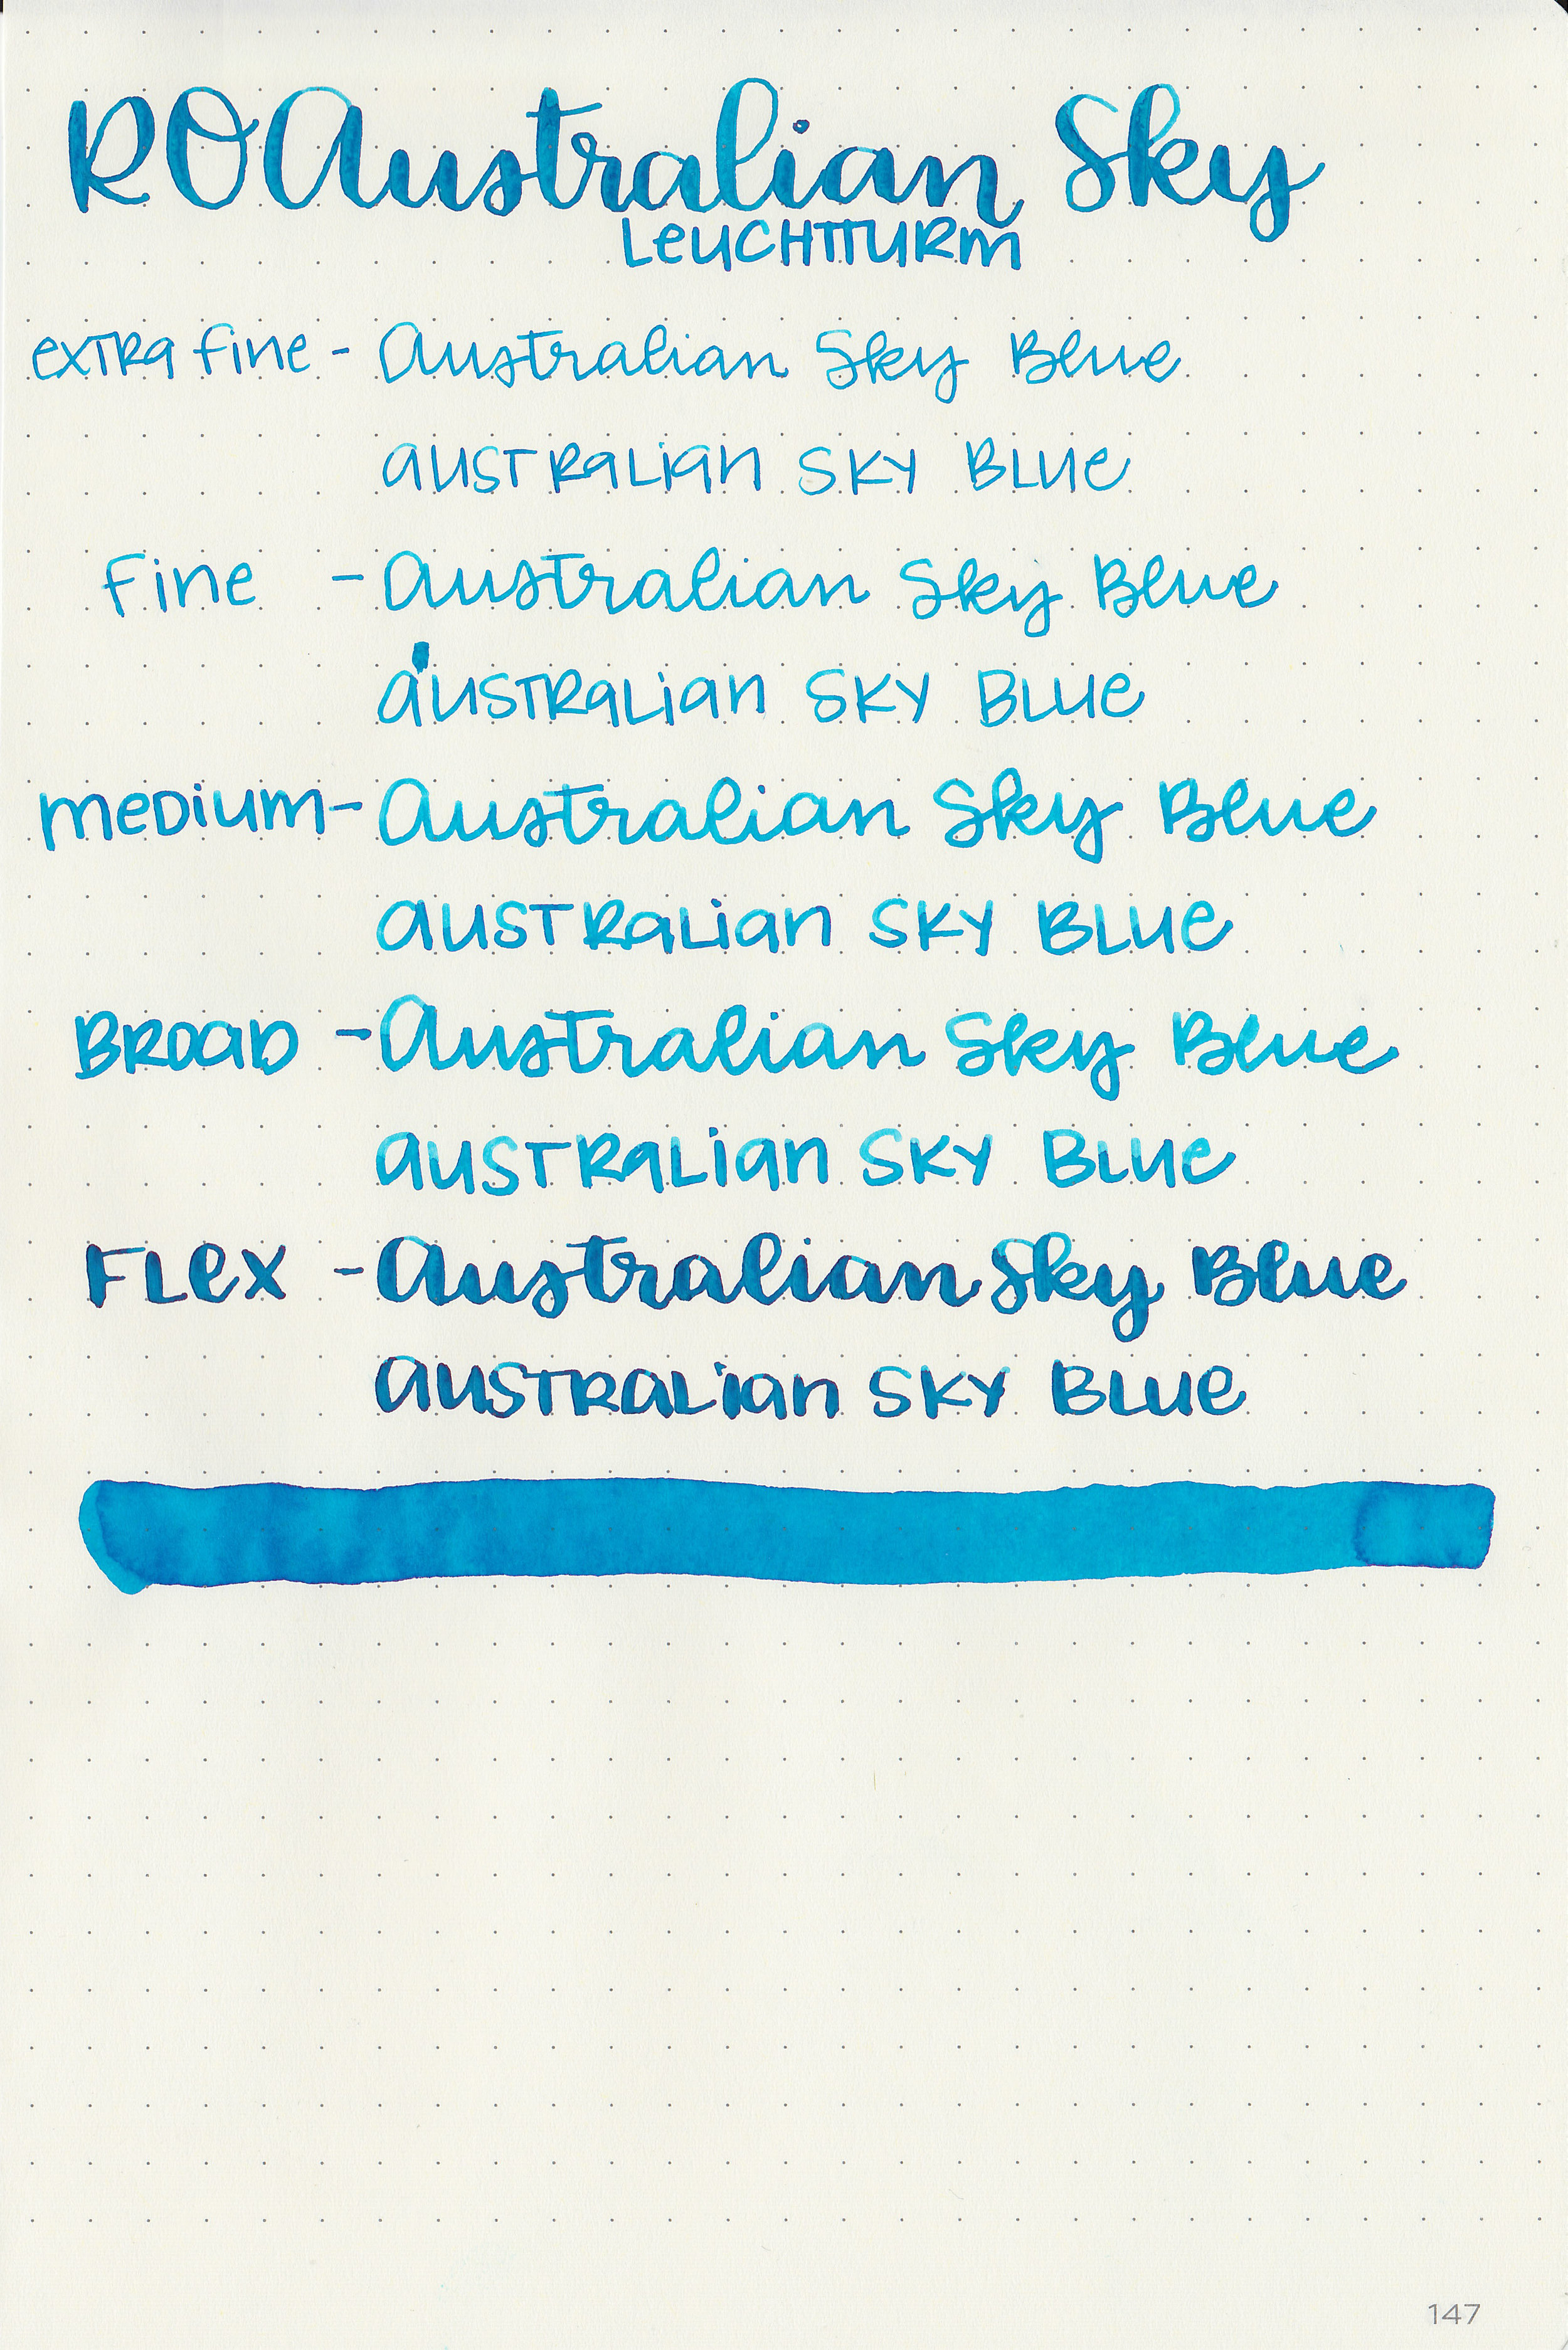 ro-australian-sky-blue-21.jpg